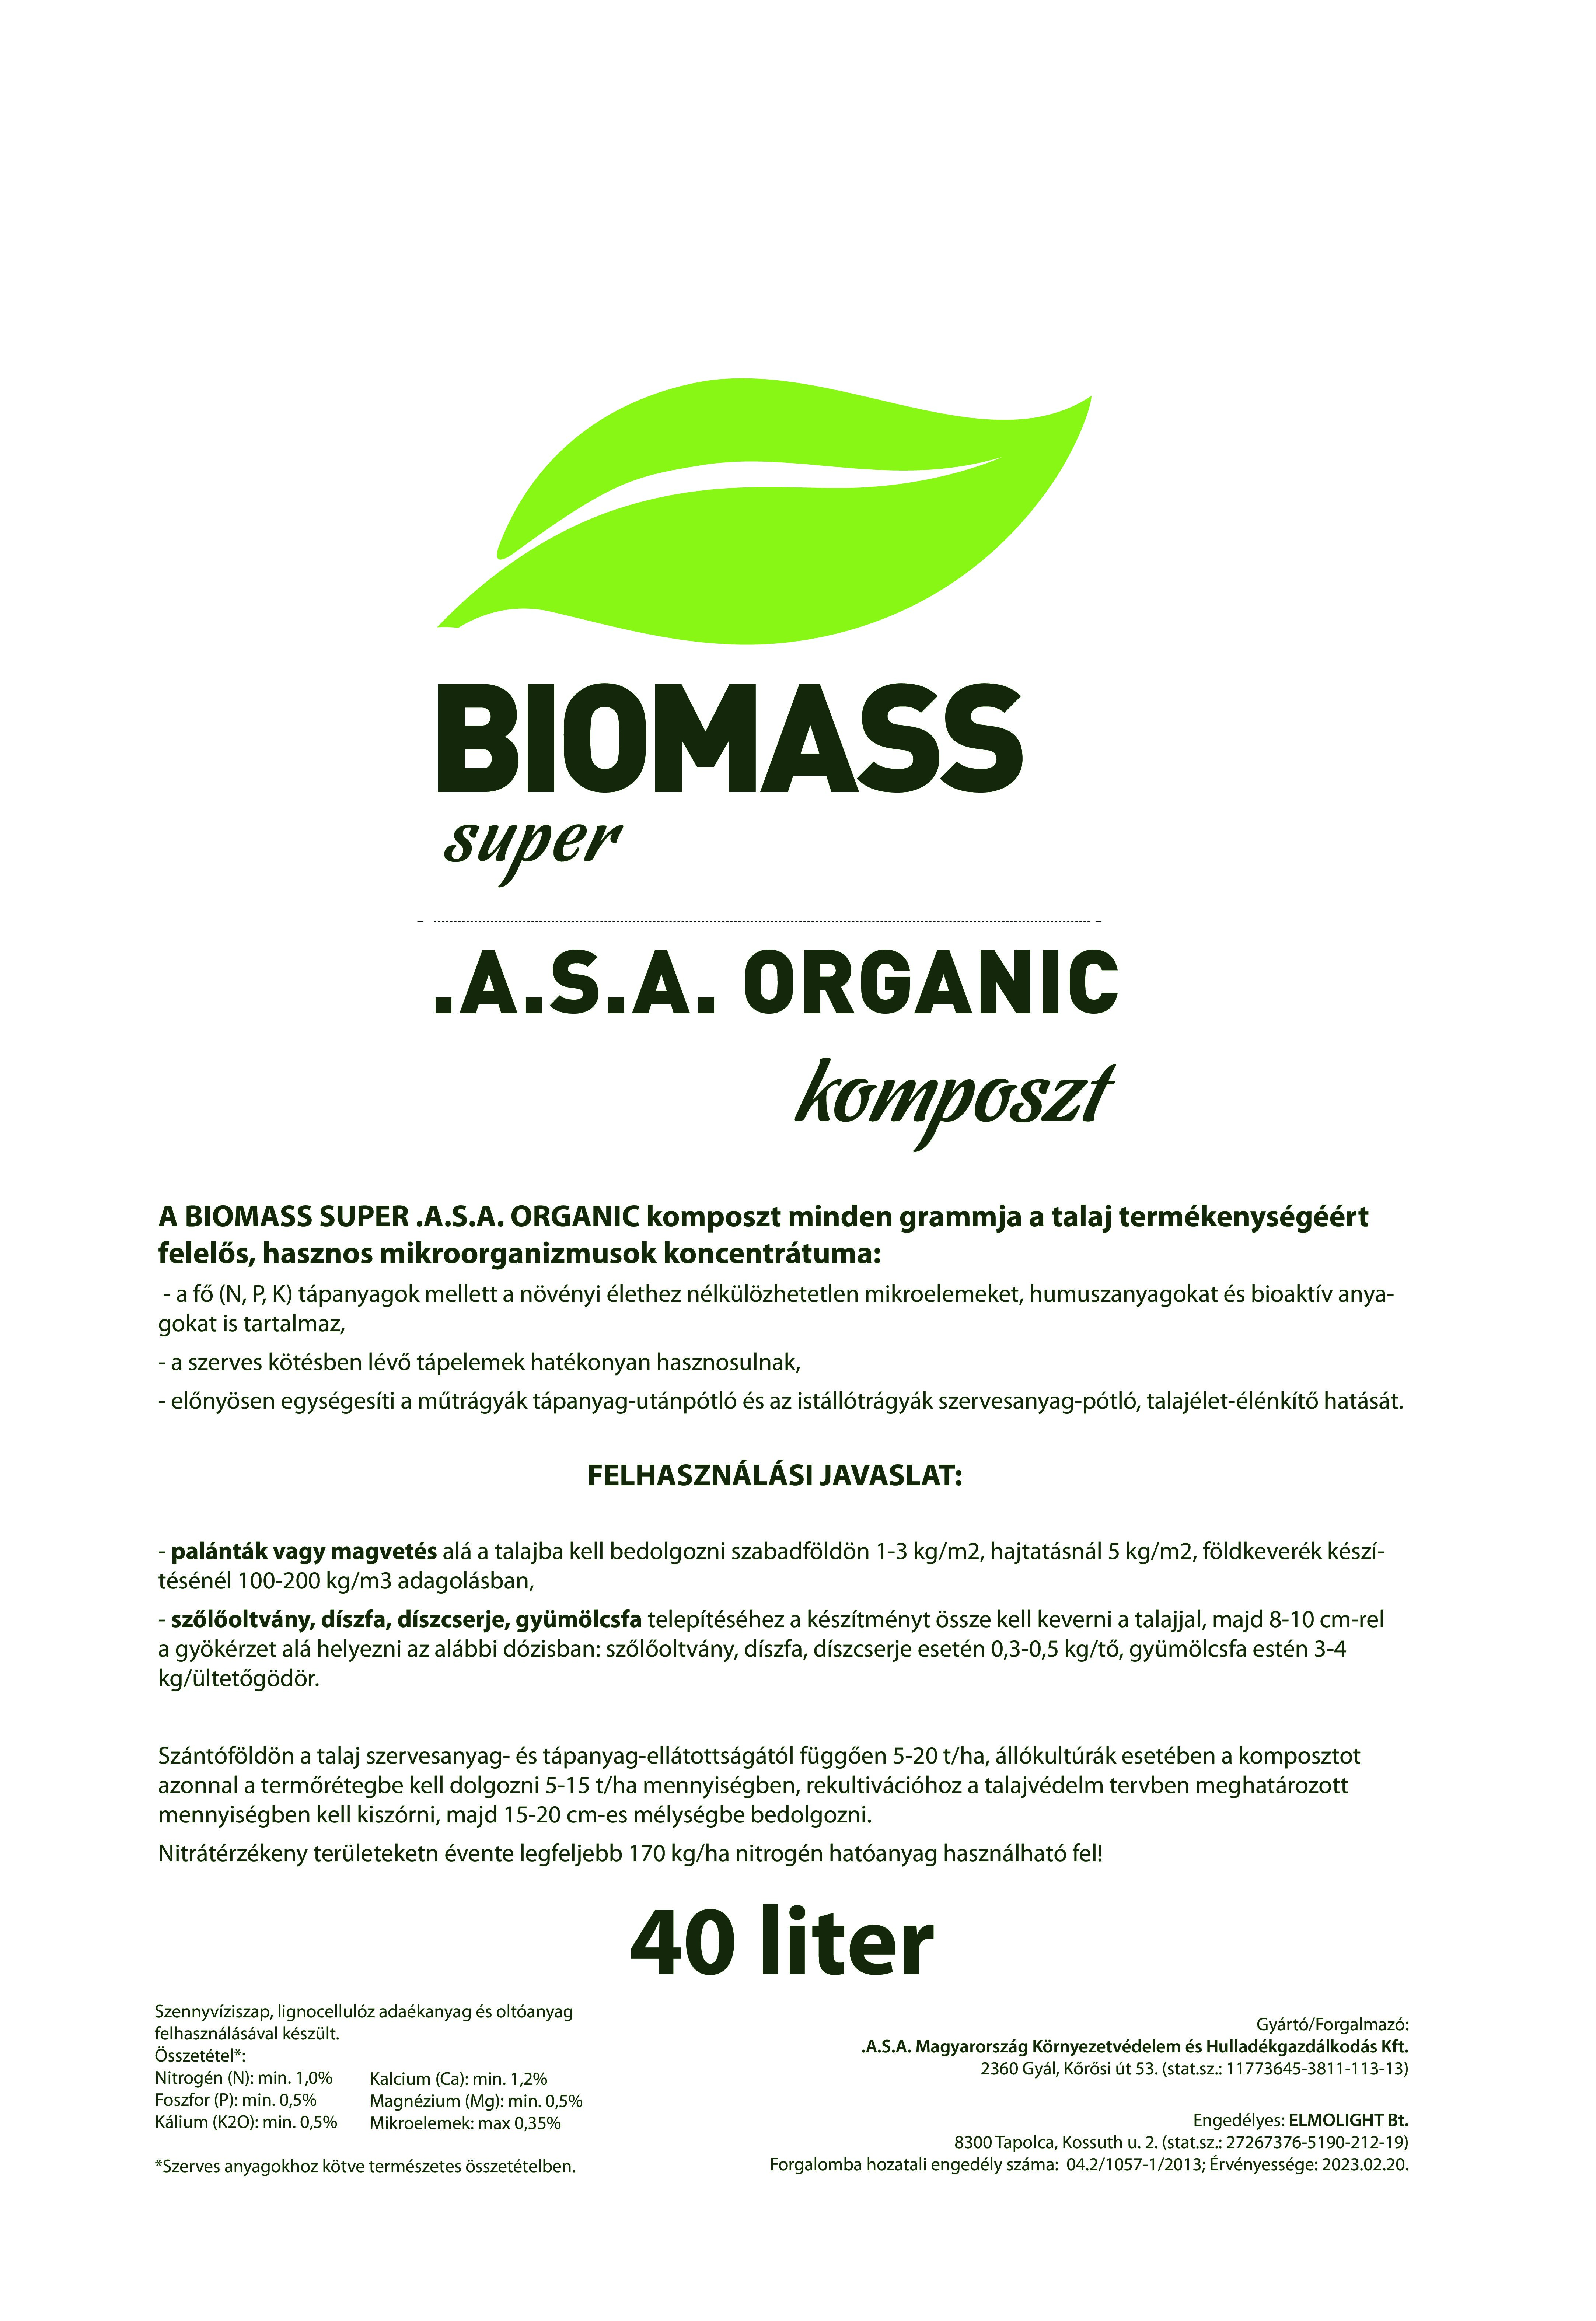 Biomass Super .A.S.A. Organic komposzt